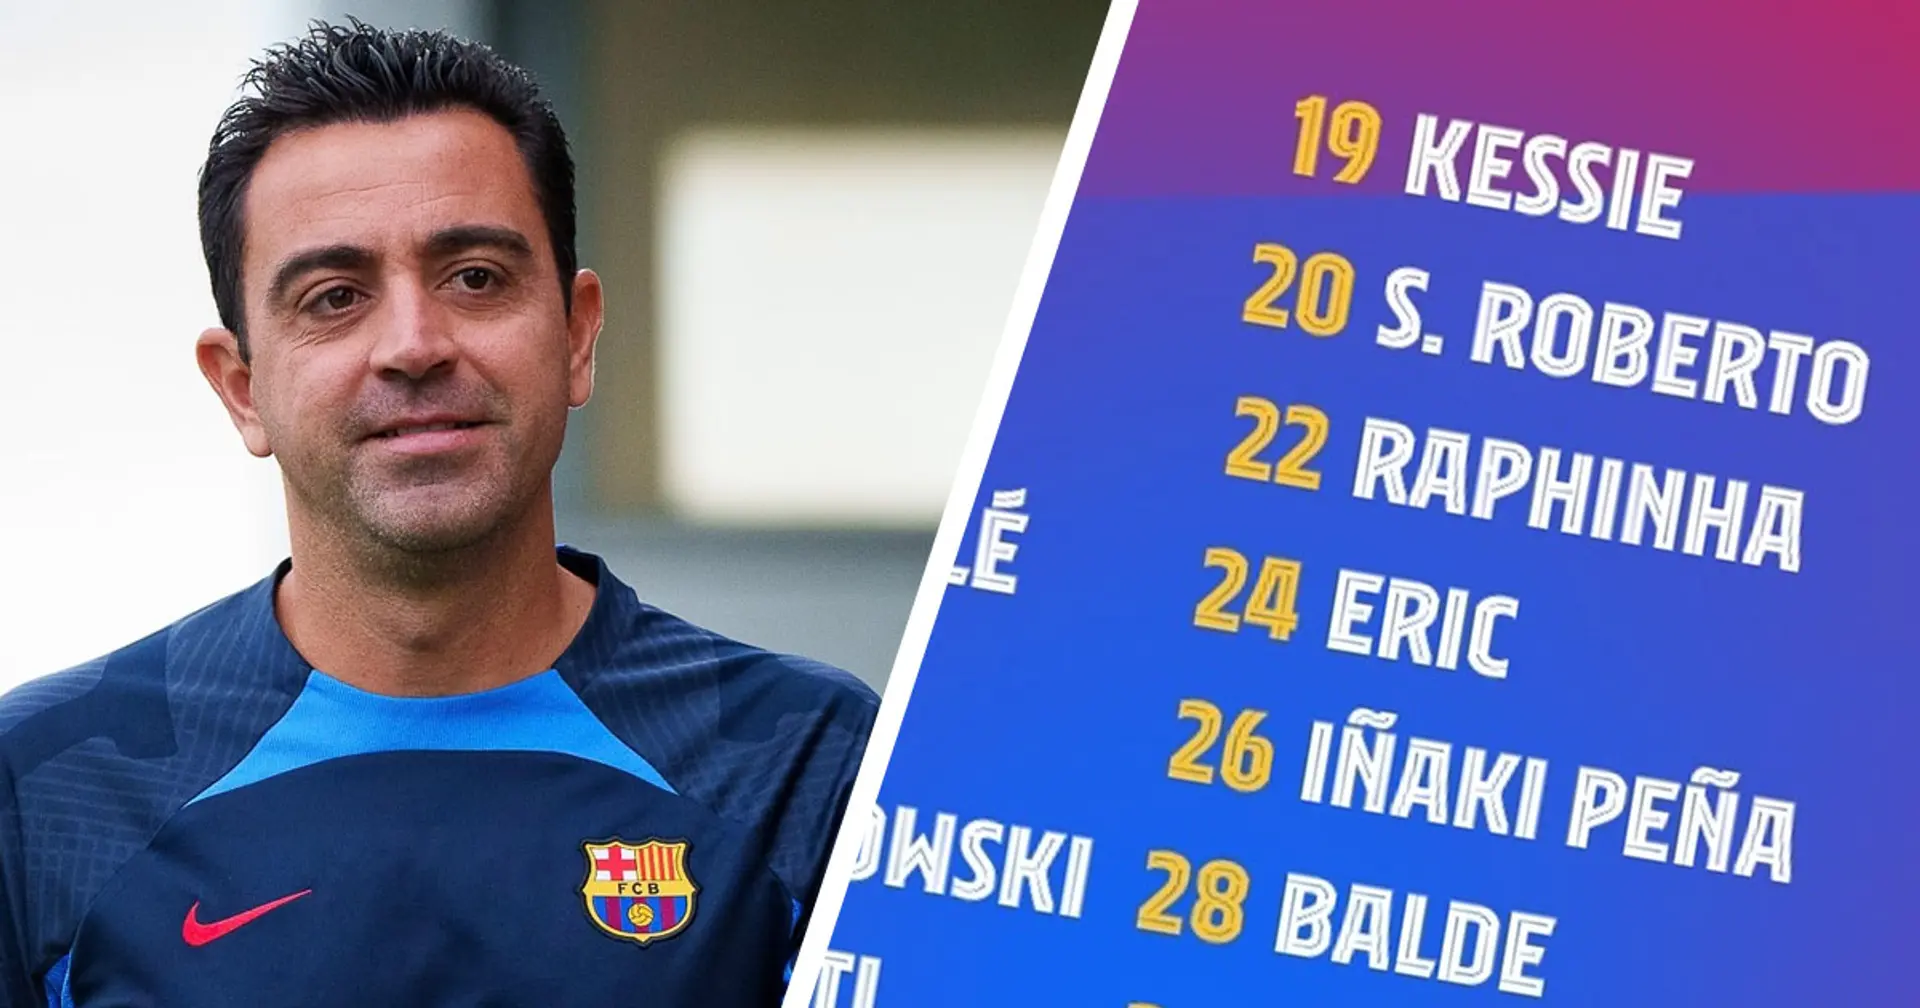 Sergi Roberto regresa: el Barça confirma la convocatoria de 21 jugadores para el partido vs Mallorca